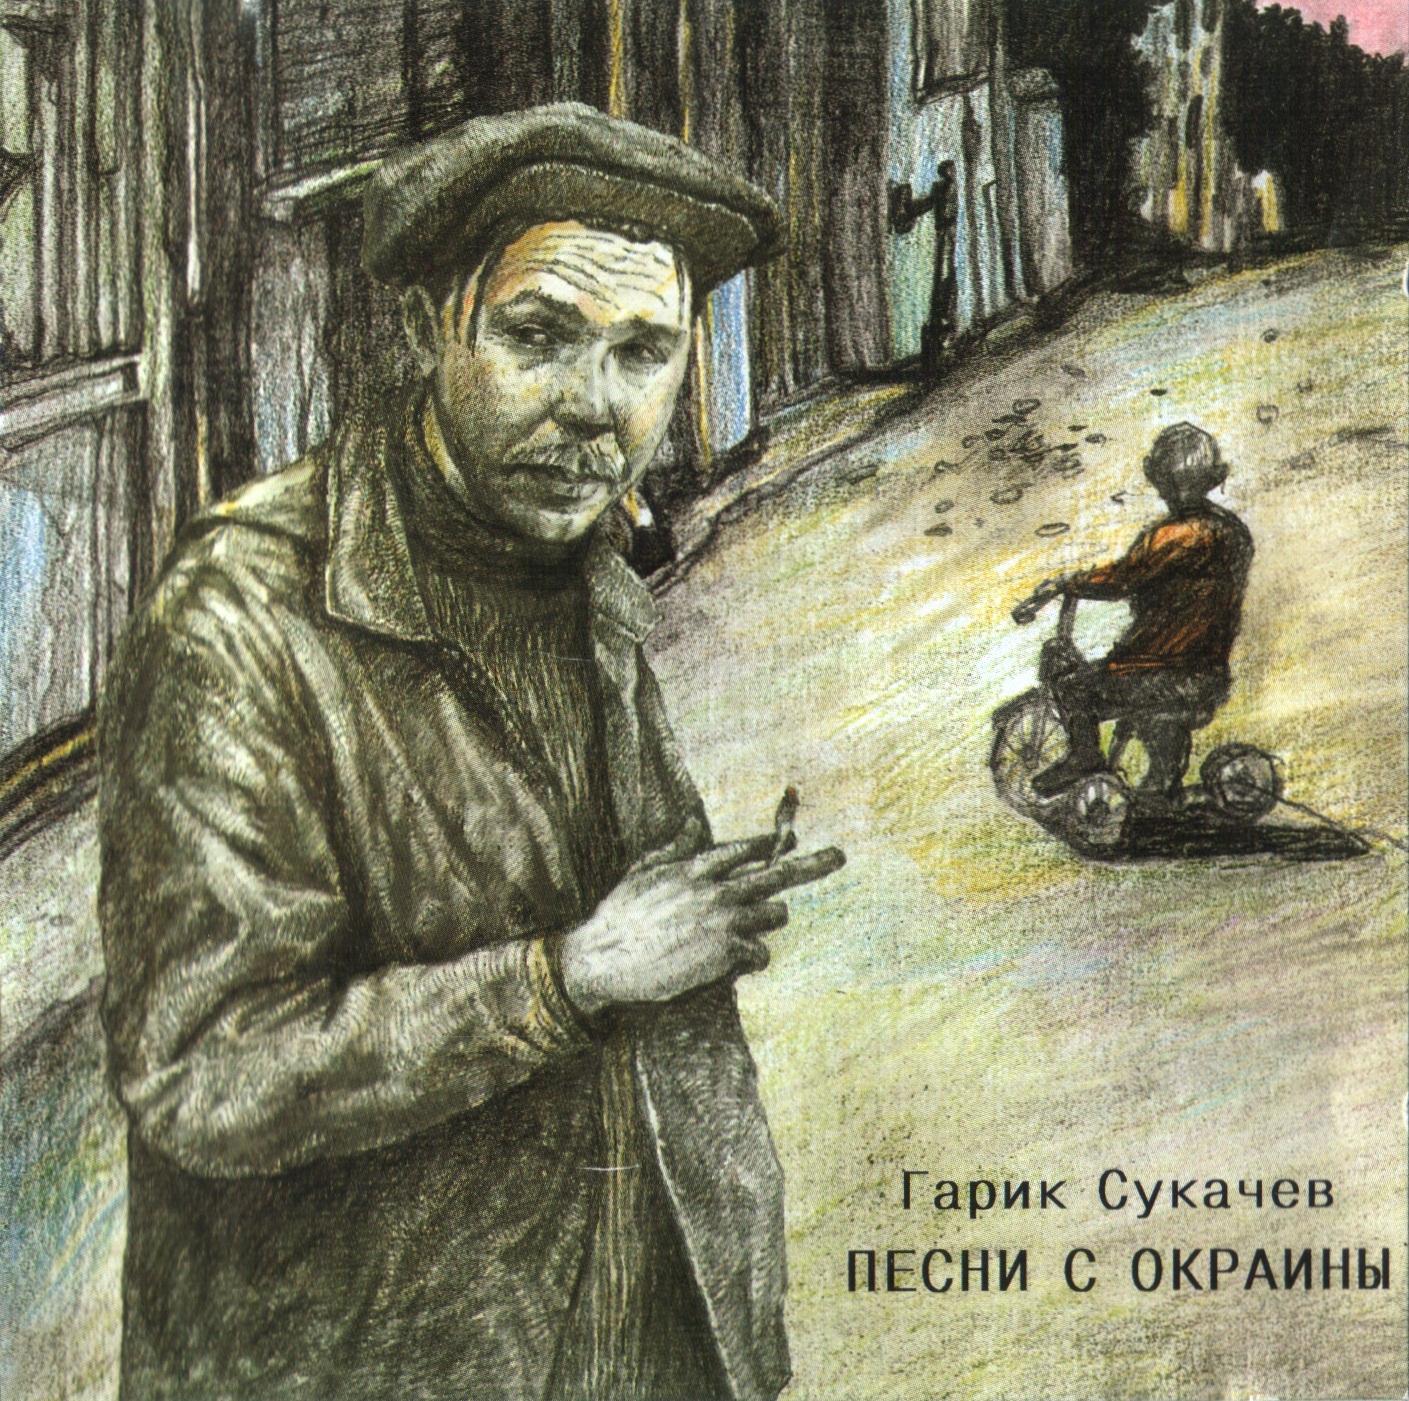 Гарик Сукачев - Песни с окраины (1996)